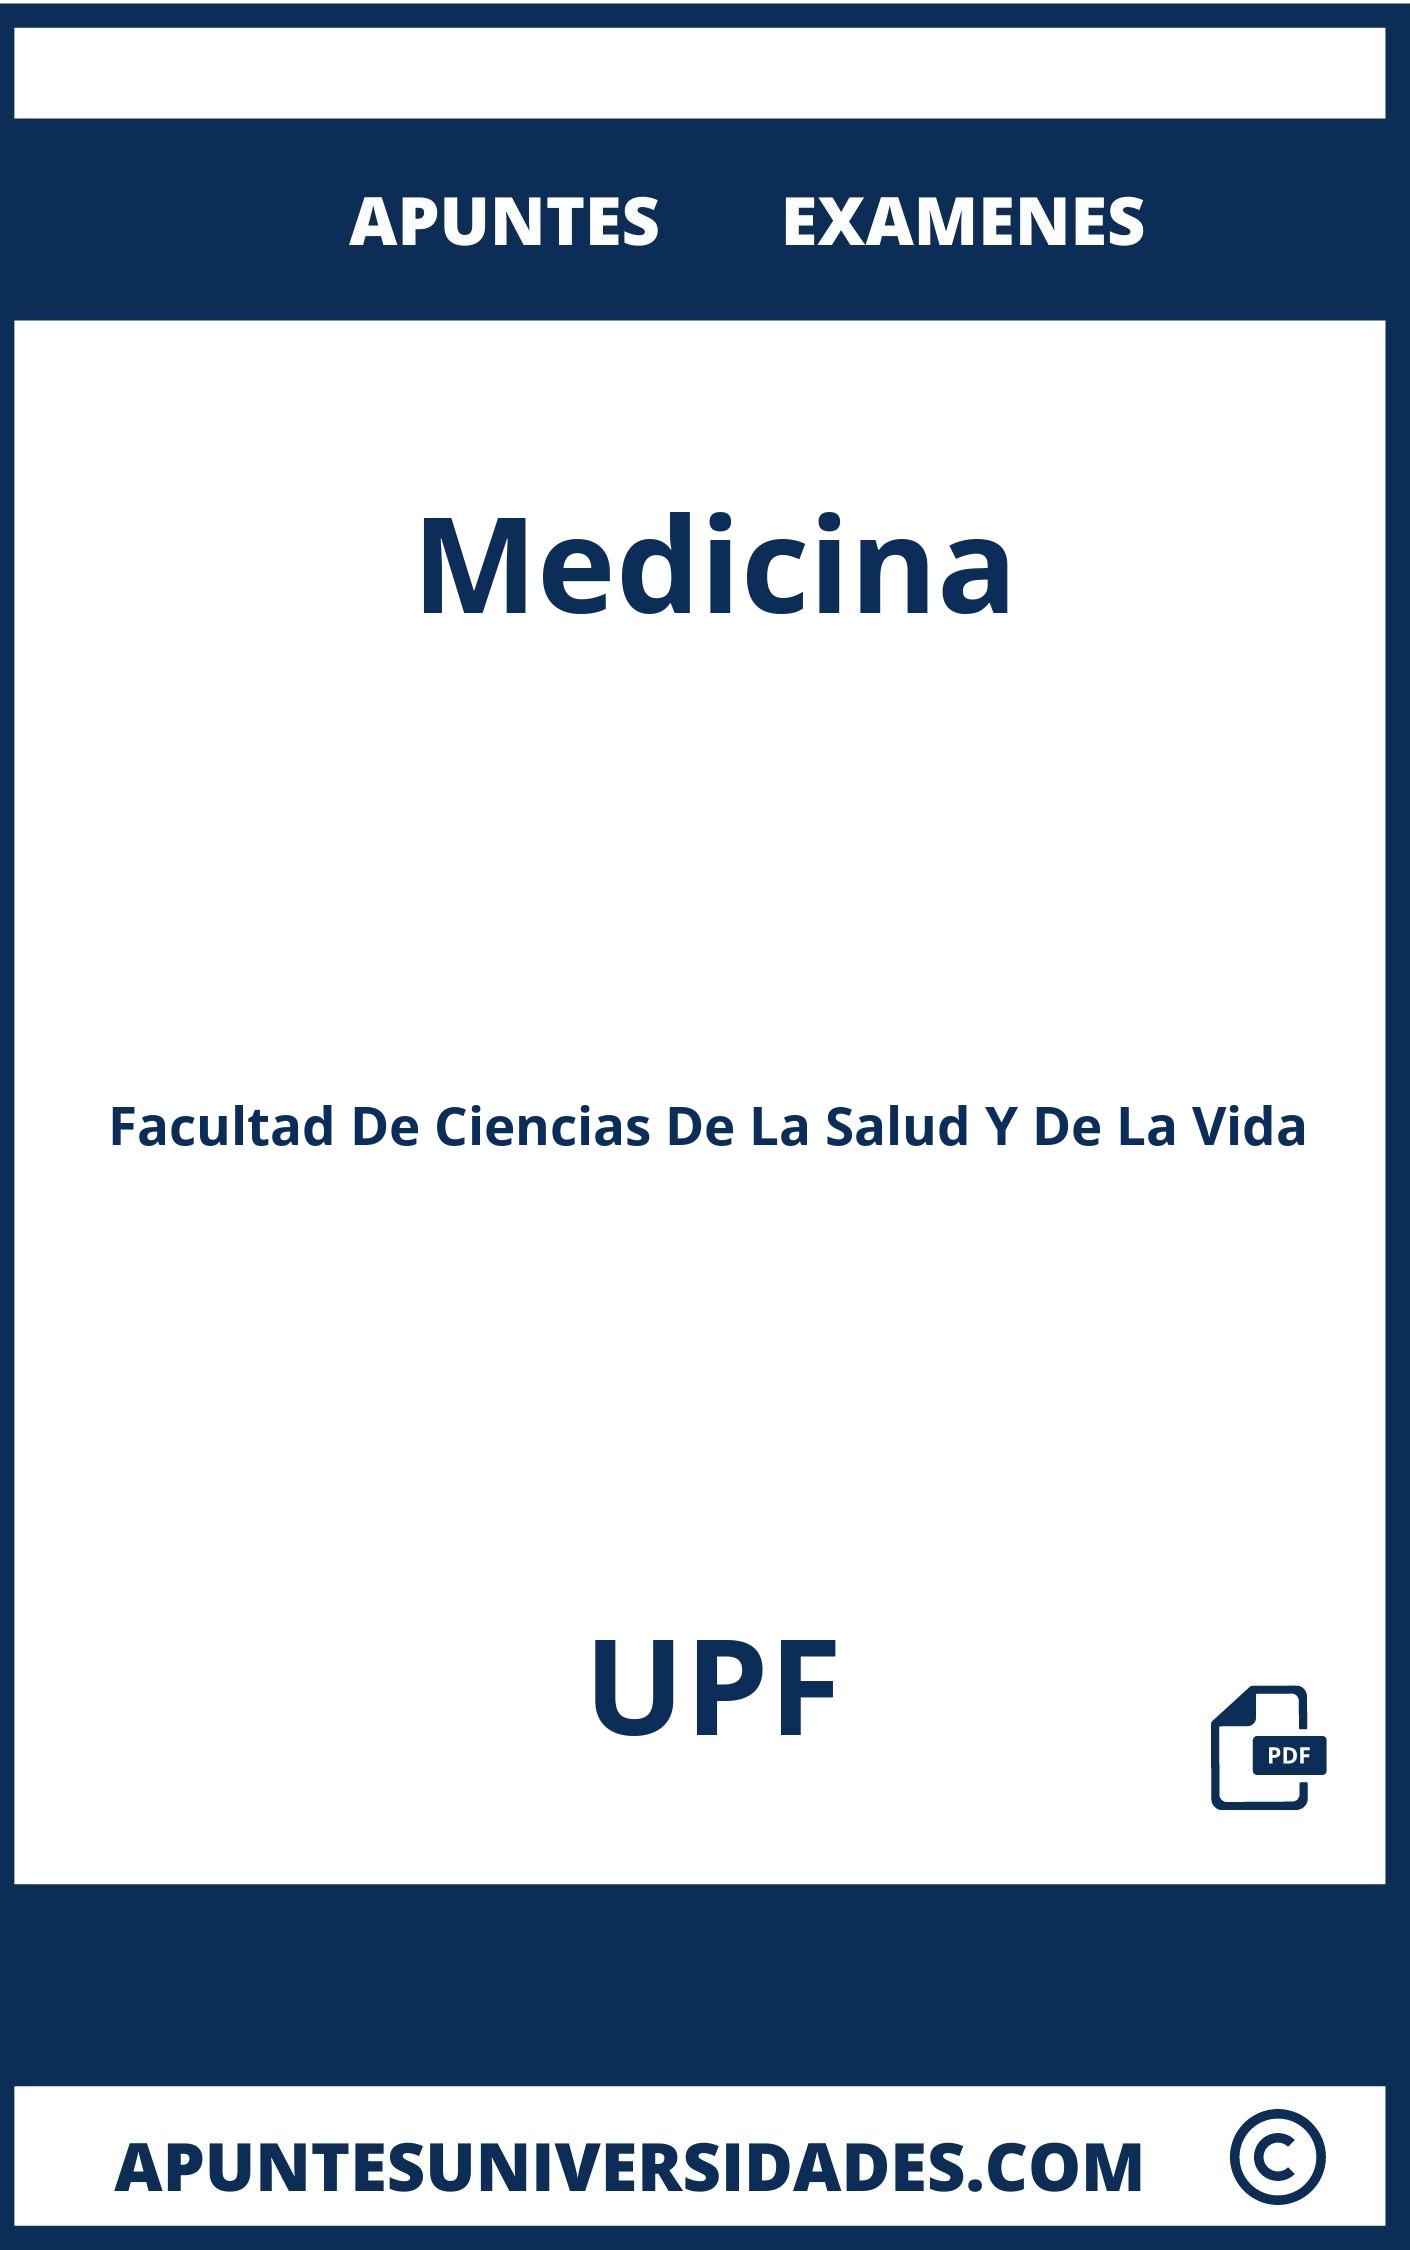 Apuntes y Examenes Medicina UPF